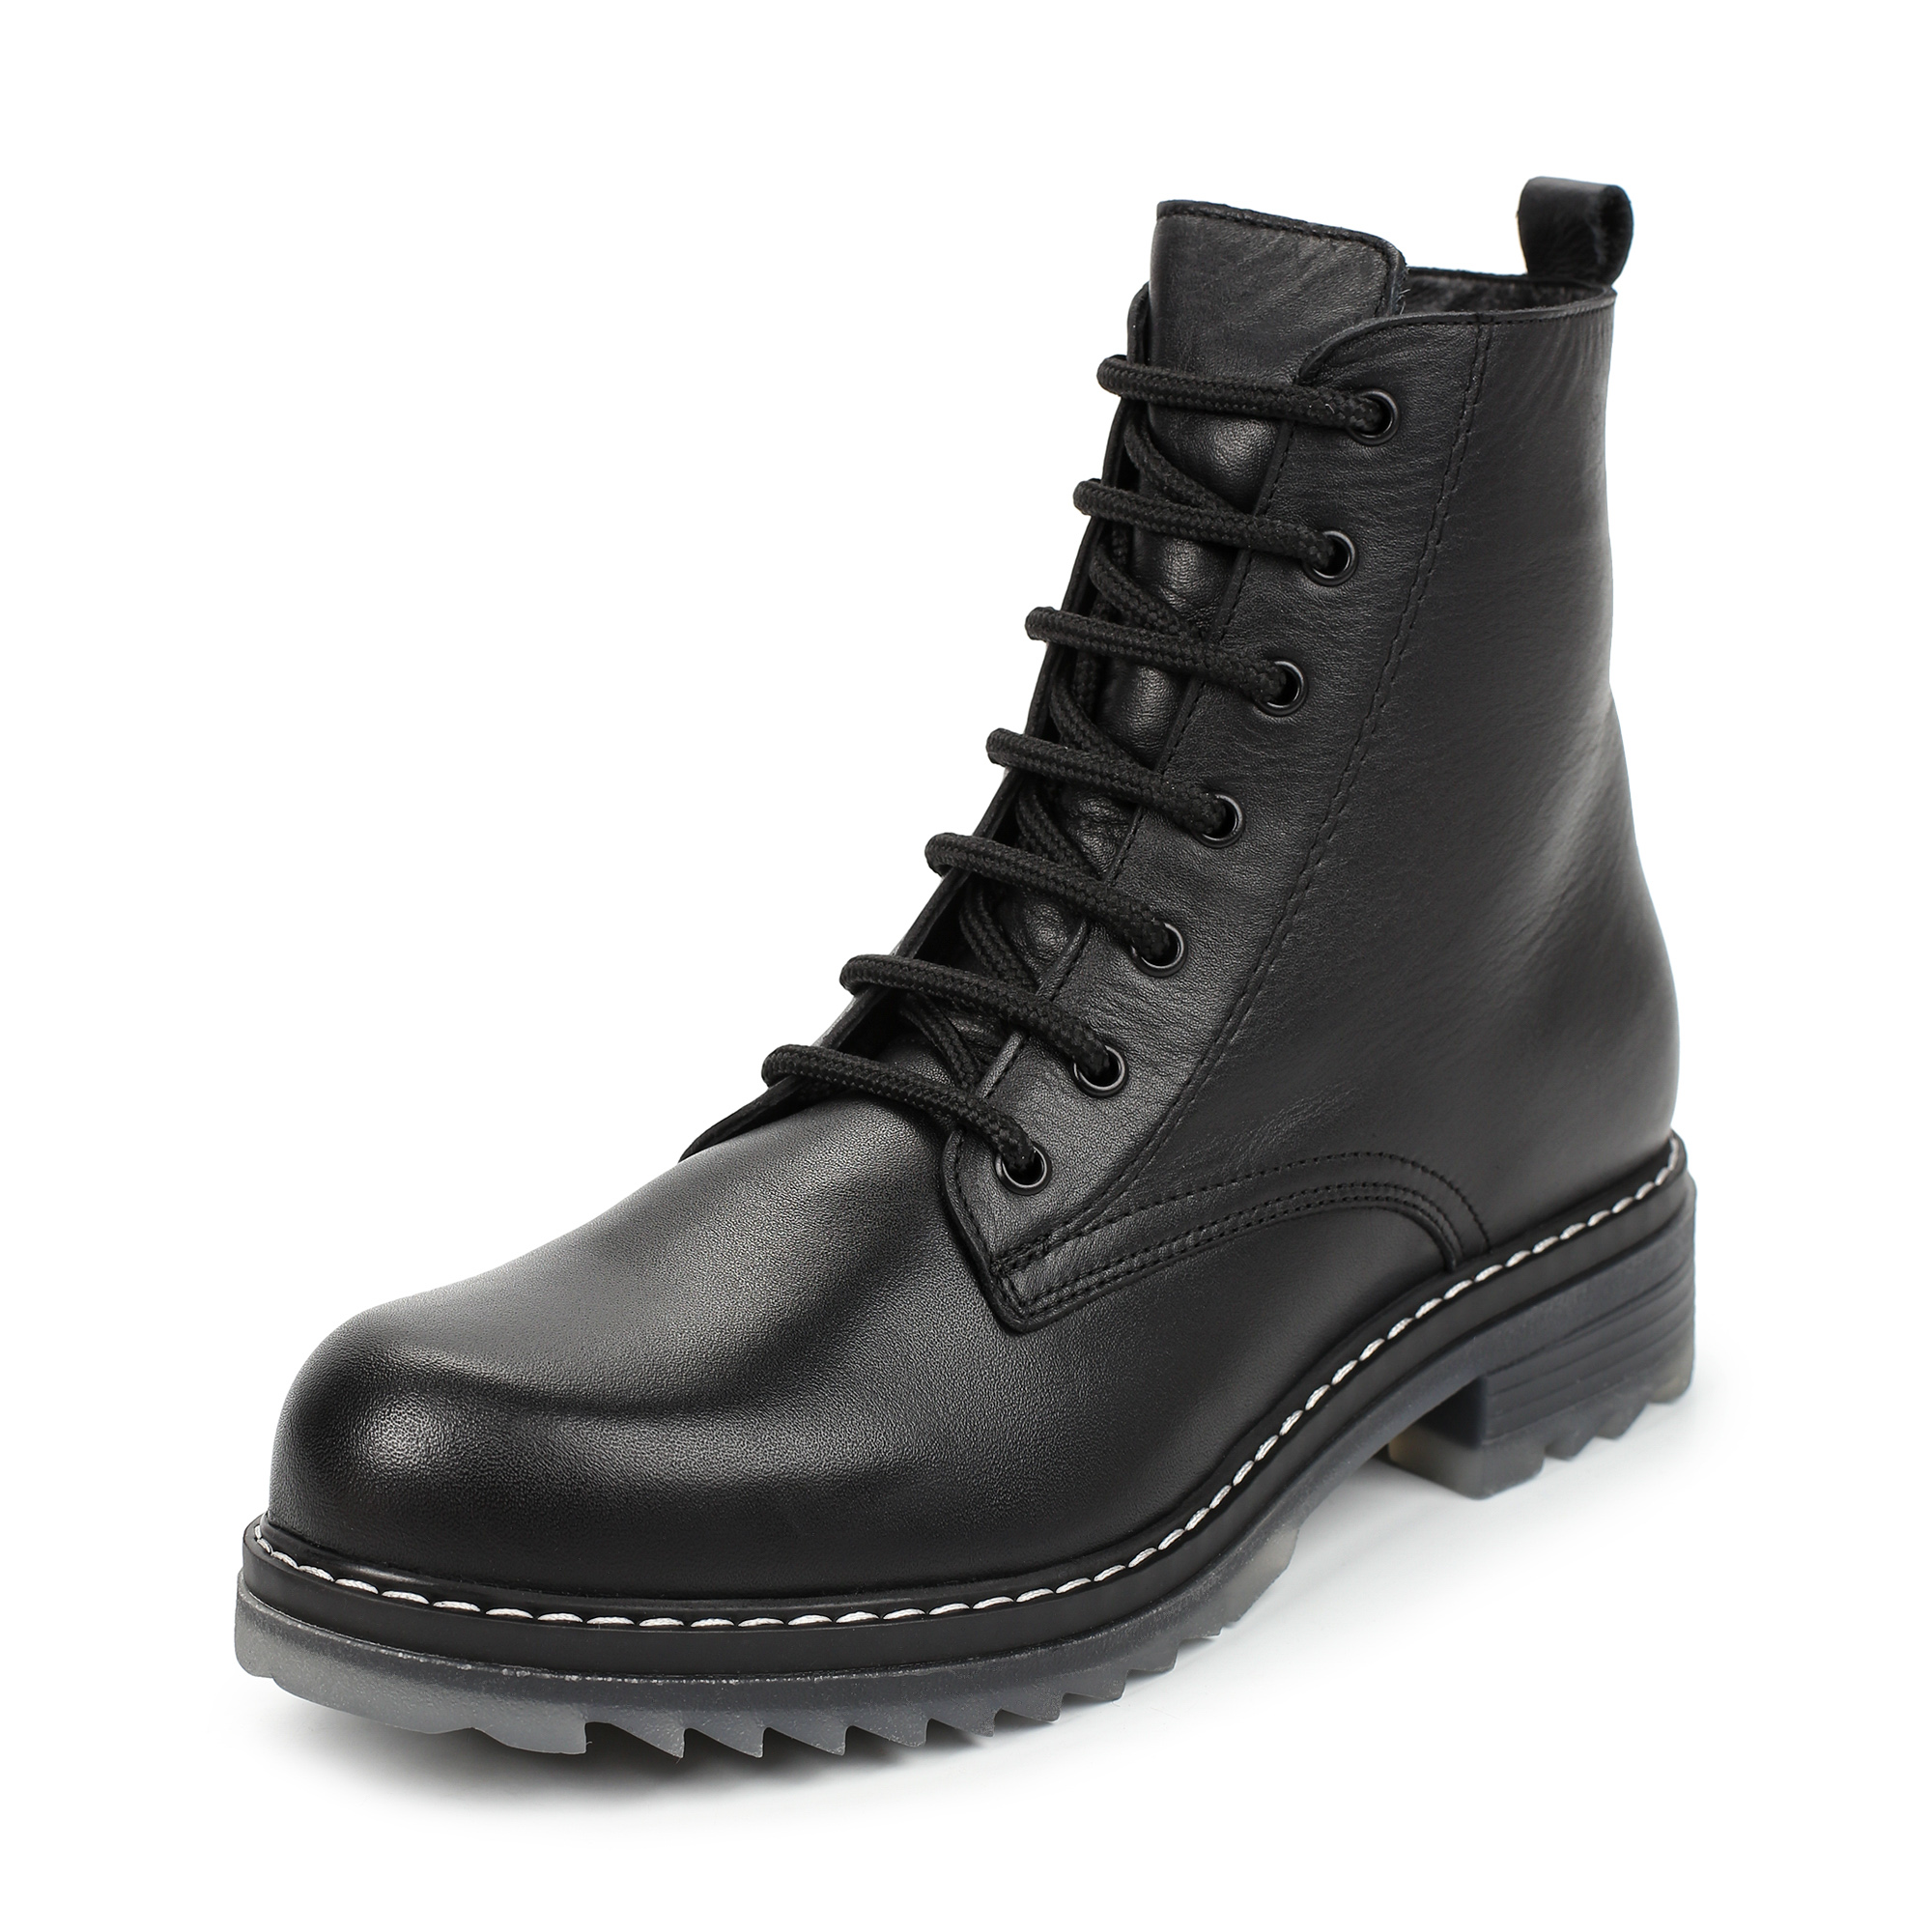 Ботинки Thomas Munz 506-005A-2102, цвет черный, размер 39 - фото 2